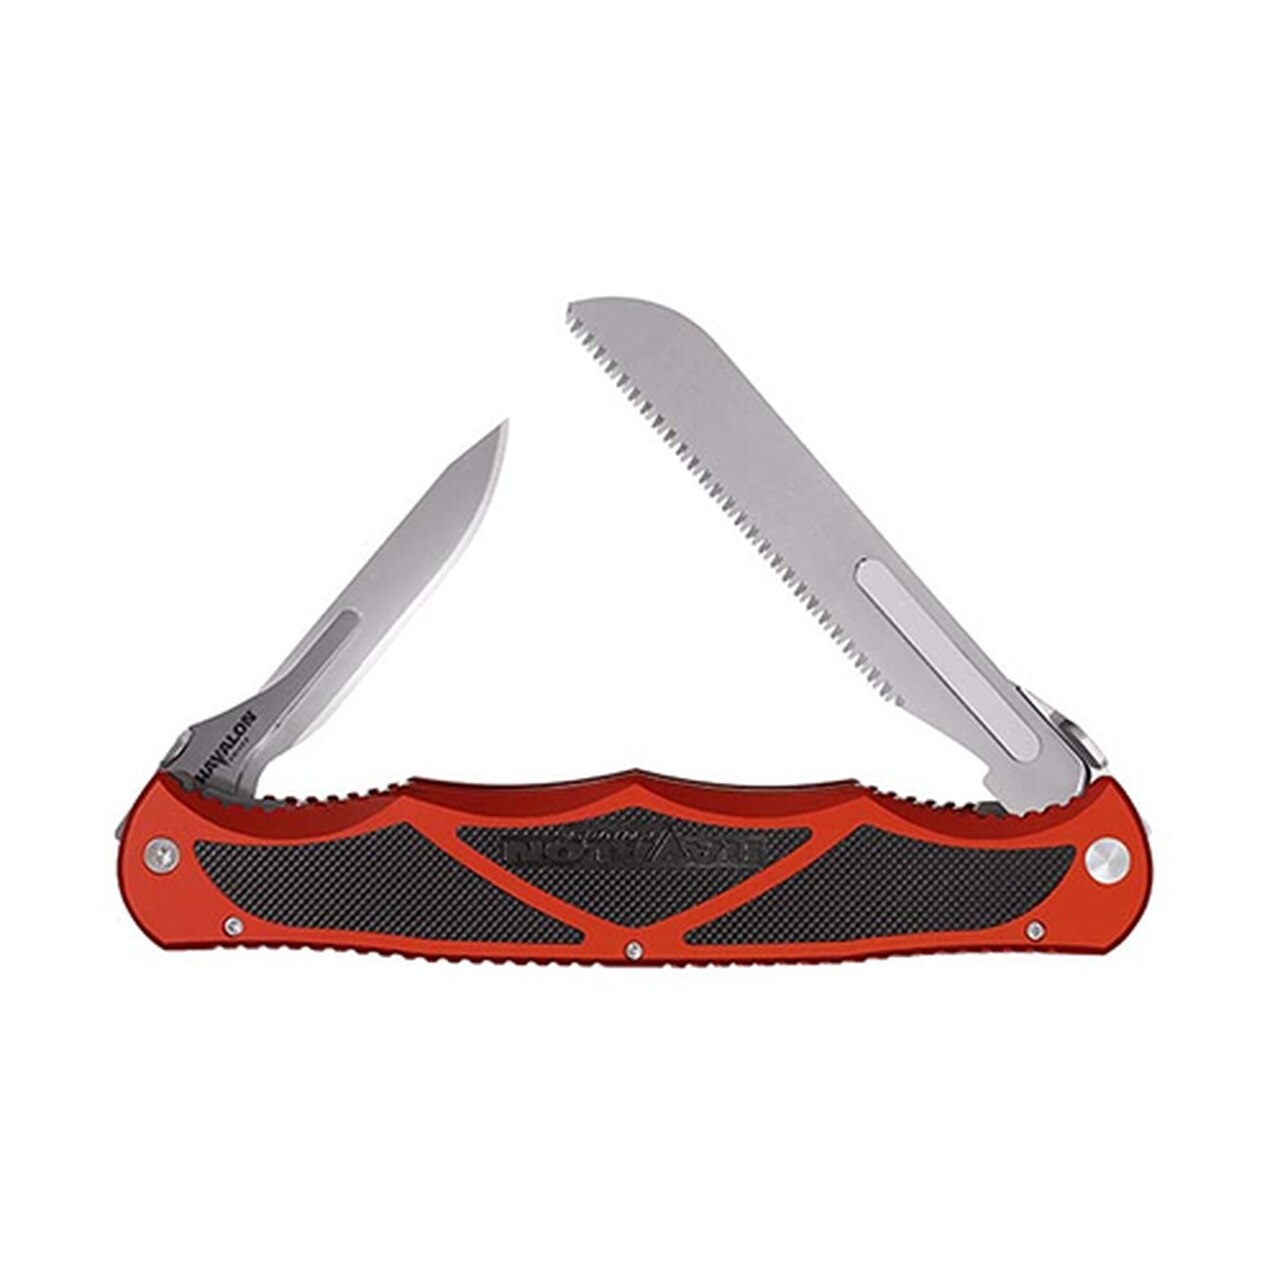 Havalon Havalon Hydra Red Double Folding Knife